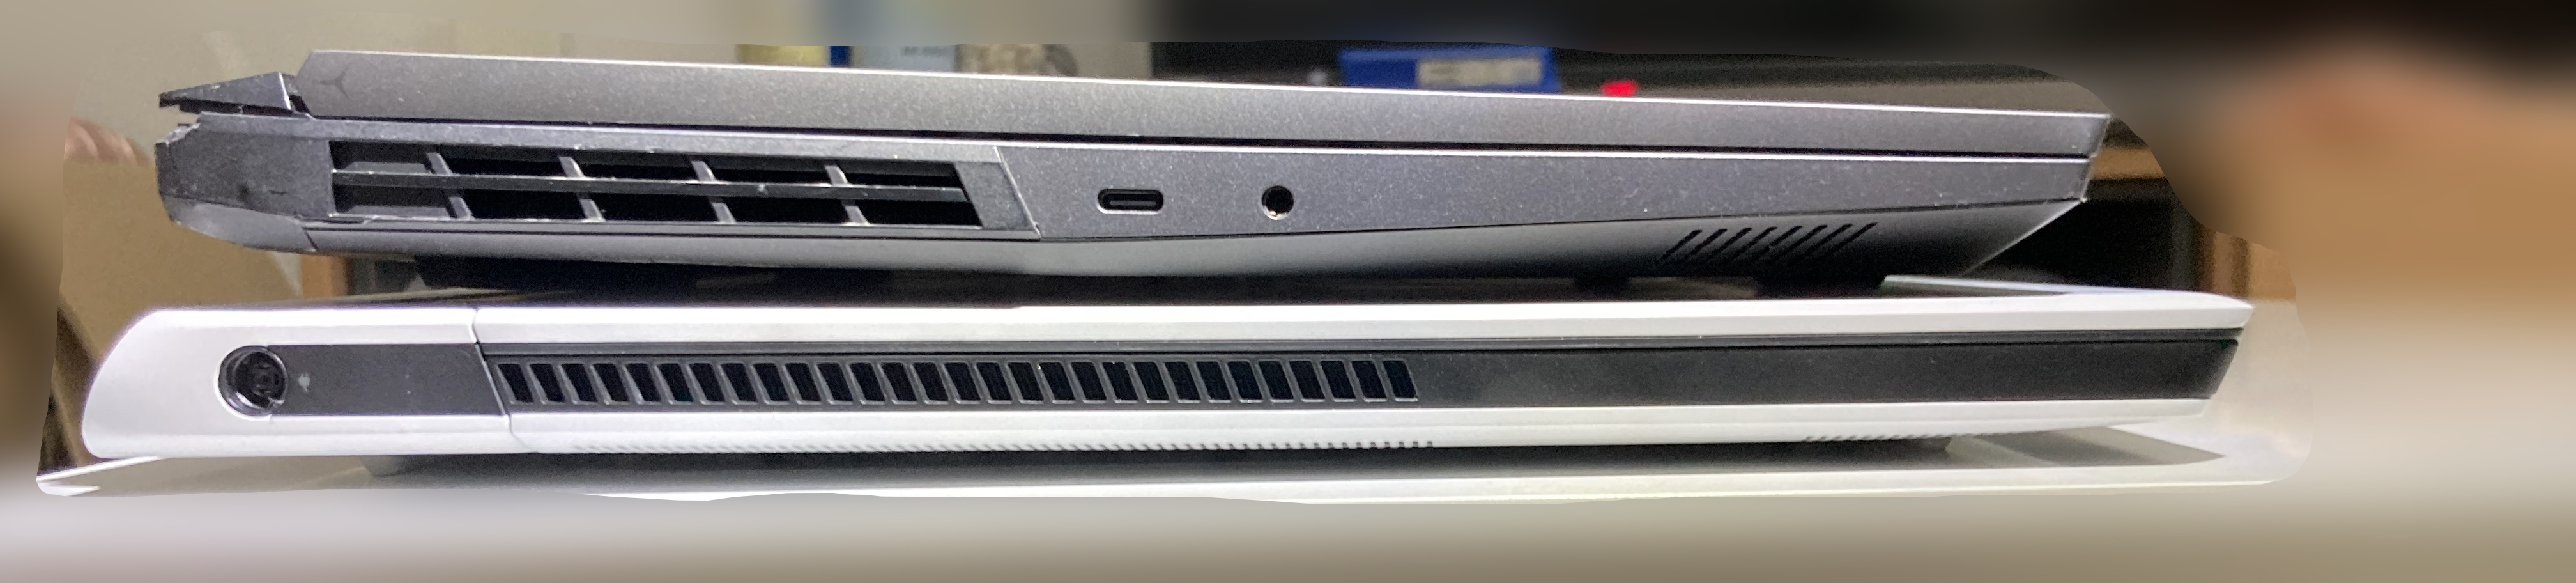 上為R9000P，下為Alienware x17，很明顯能看出厚度區別